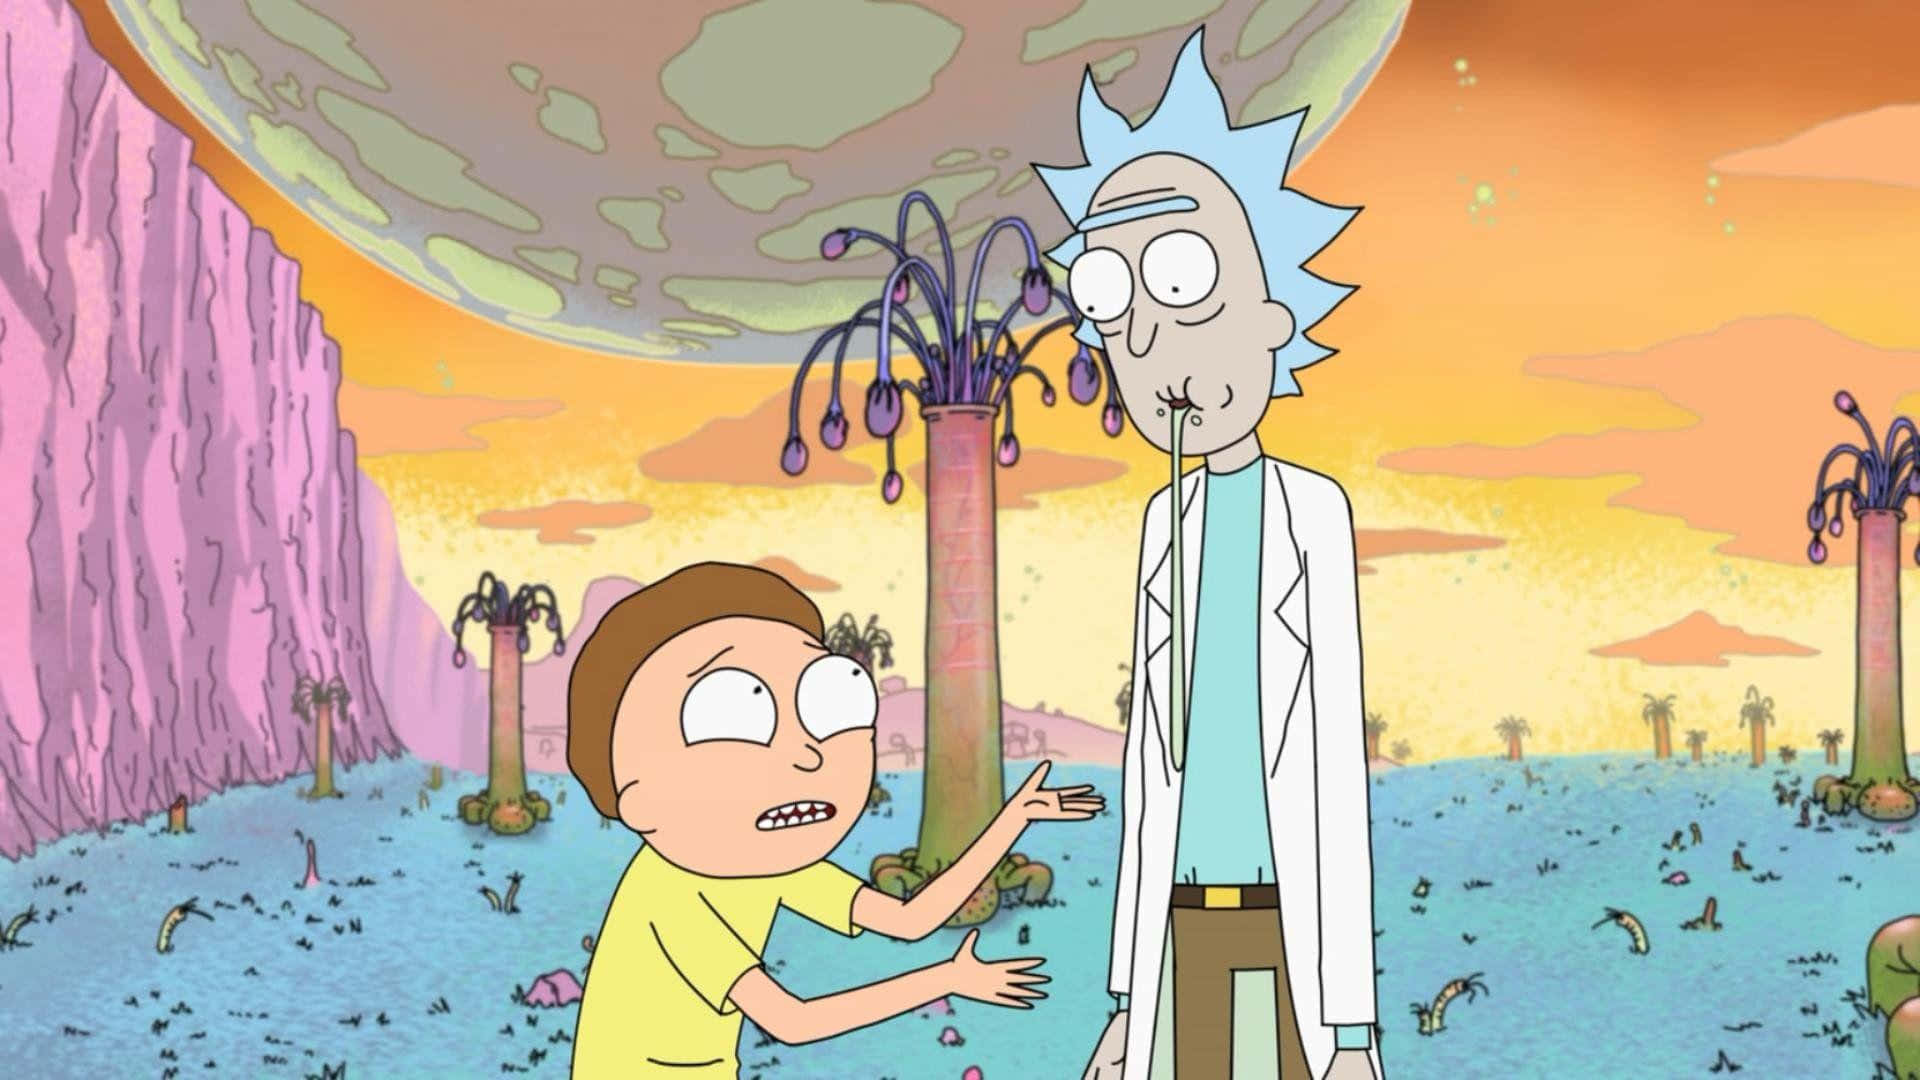 Rick og Morty gør et sejrrigt tilbagevenden i dette meme-værdige billede. Wallpaper